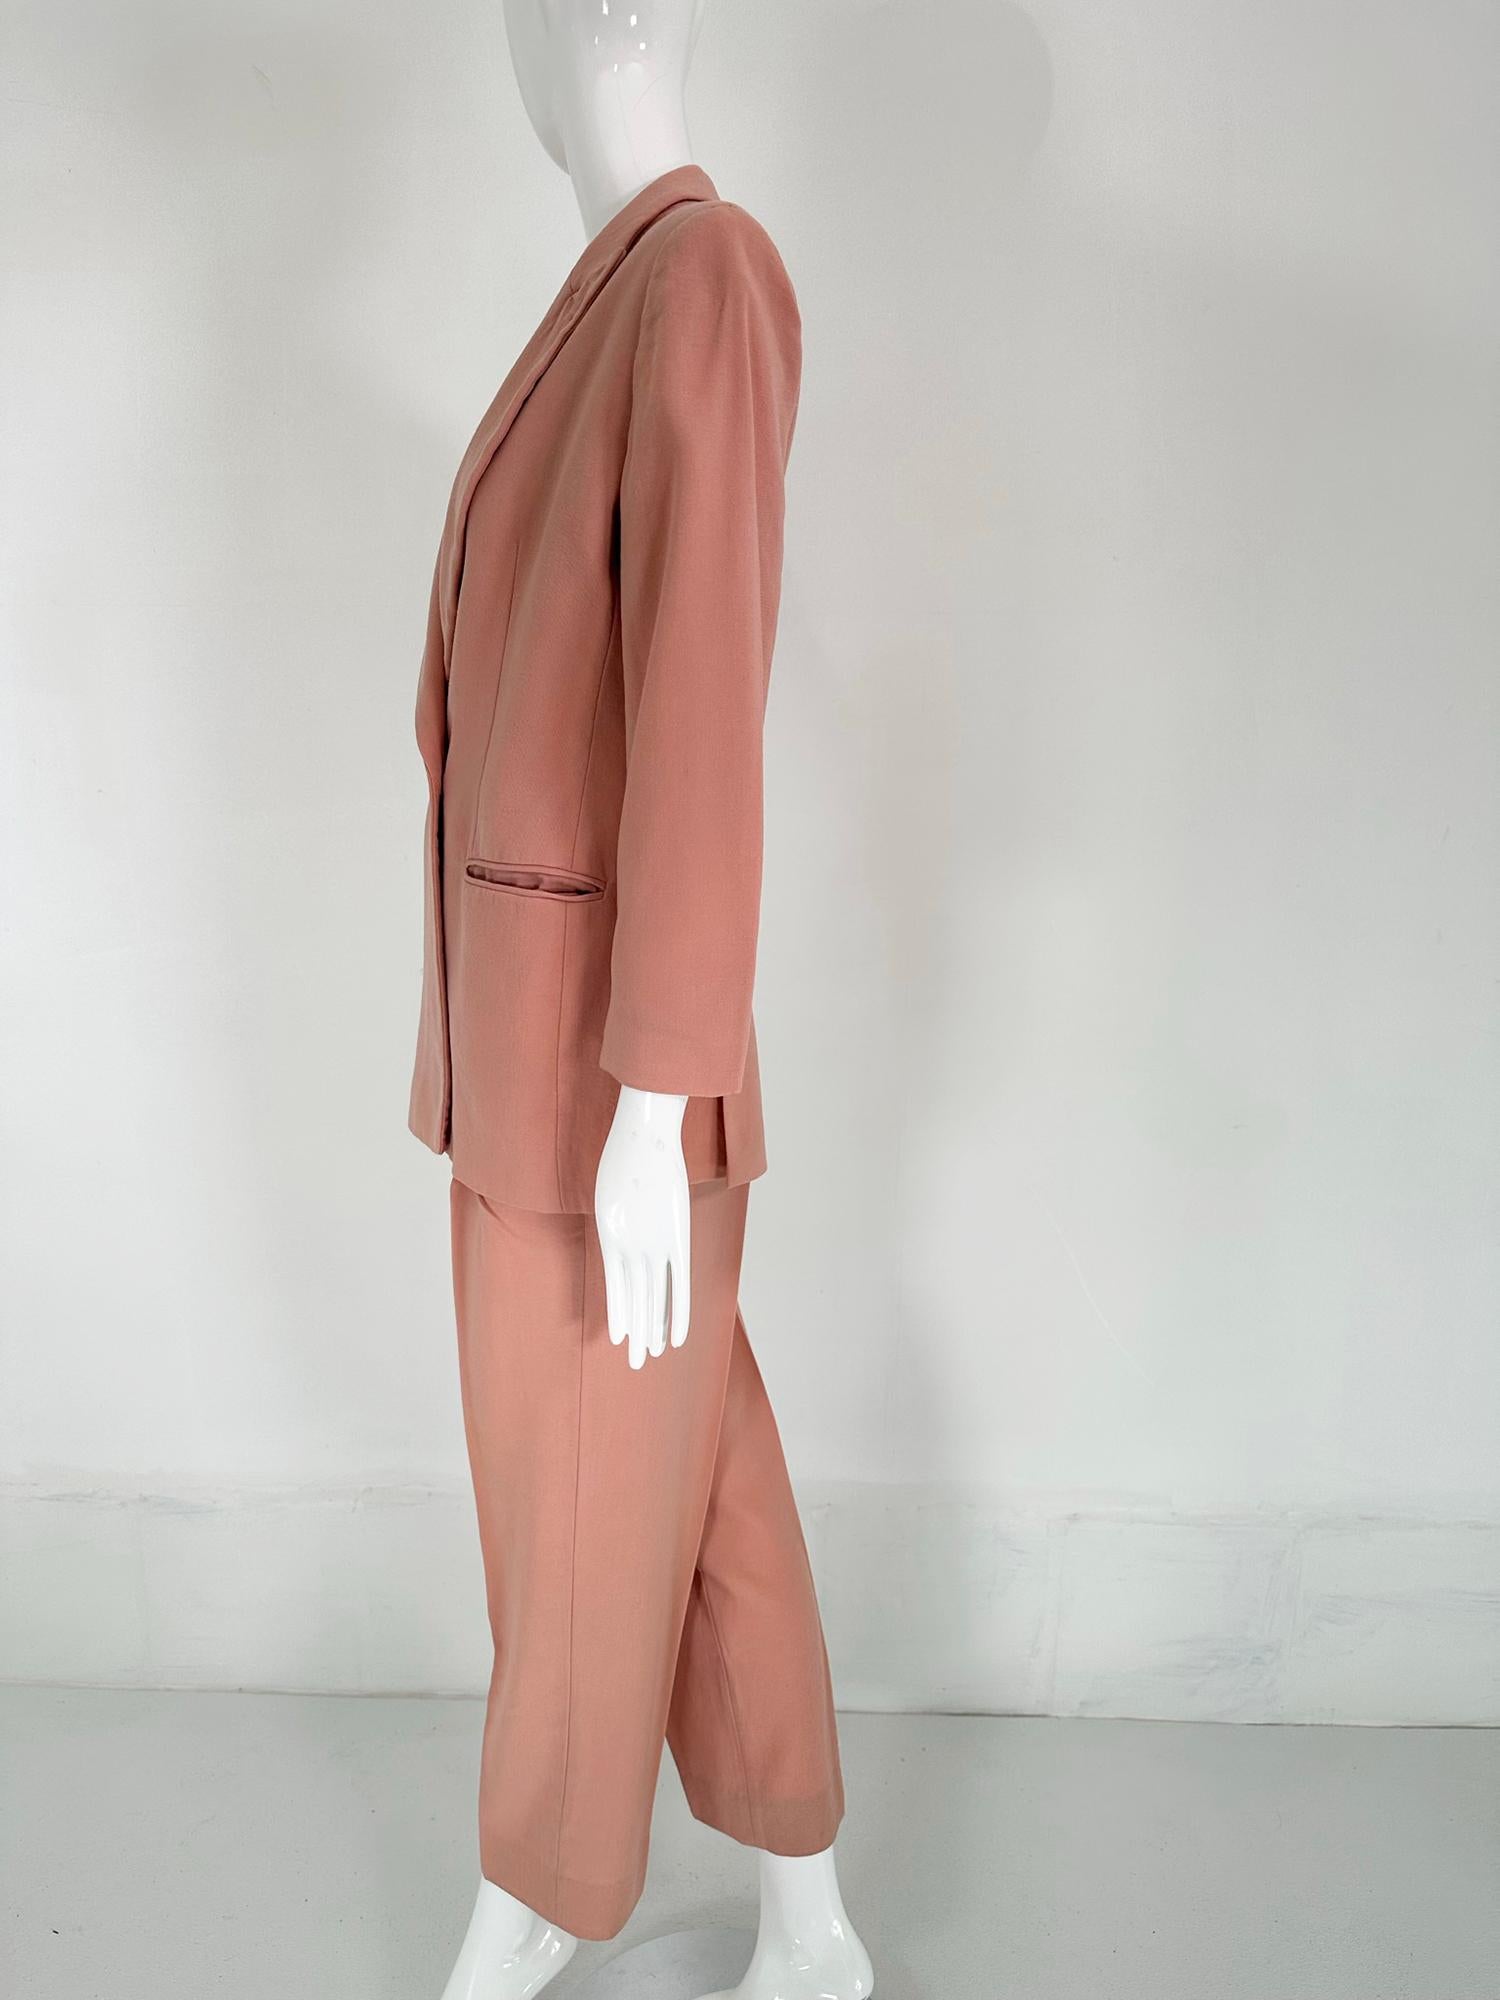 Giorgio Armani Peach Light Wool Double Breasted Pant Set 1990s 6